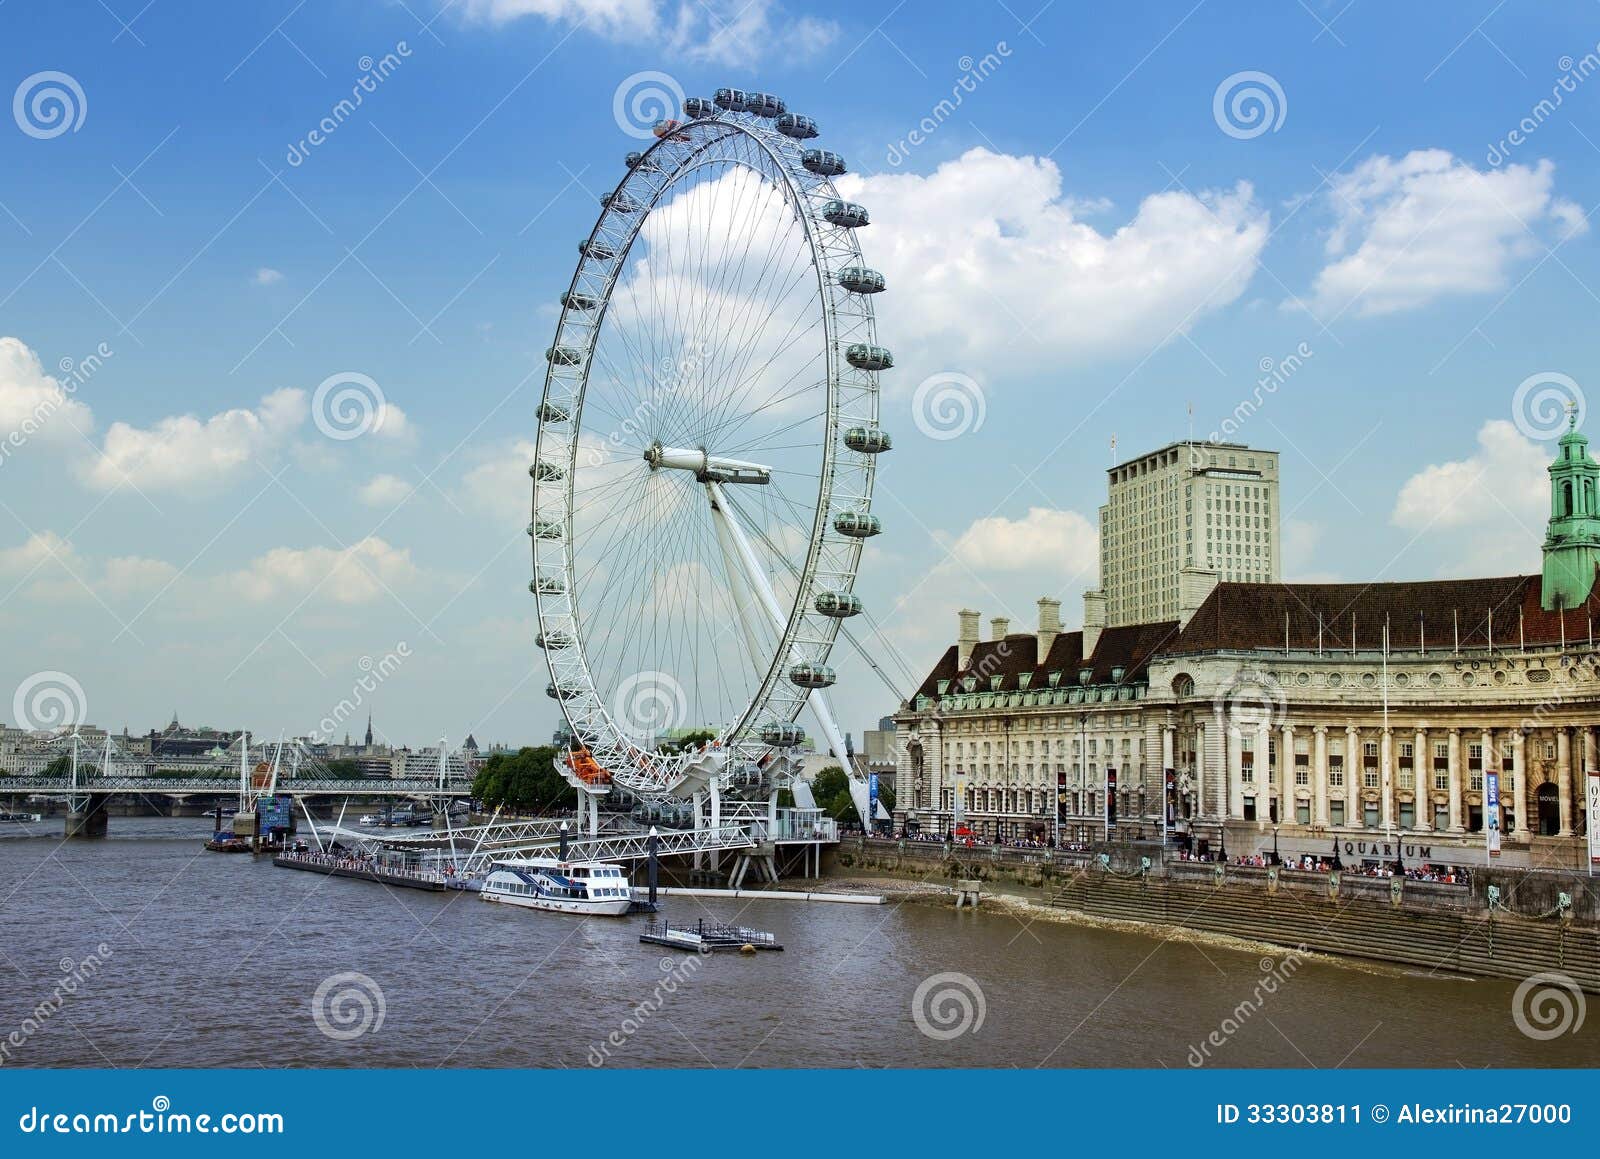 Het oog van Londen, 443 voet lang. LONDEN - Juli 17: Het oog van Londen op 17 Juli, 2013 in Londen, Engeland. Het oog van Londen is het grootste ferriswiel in Europa bij 443 voet lang